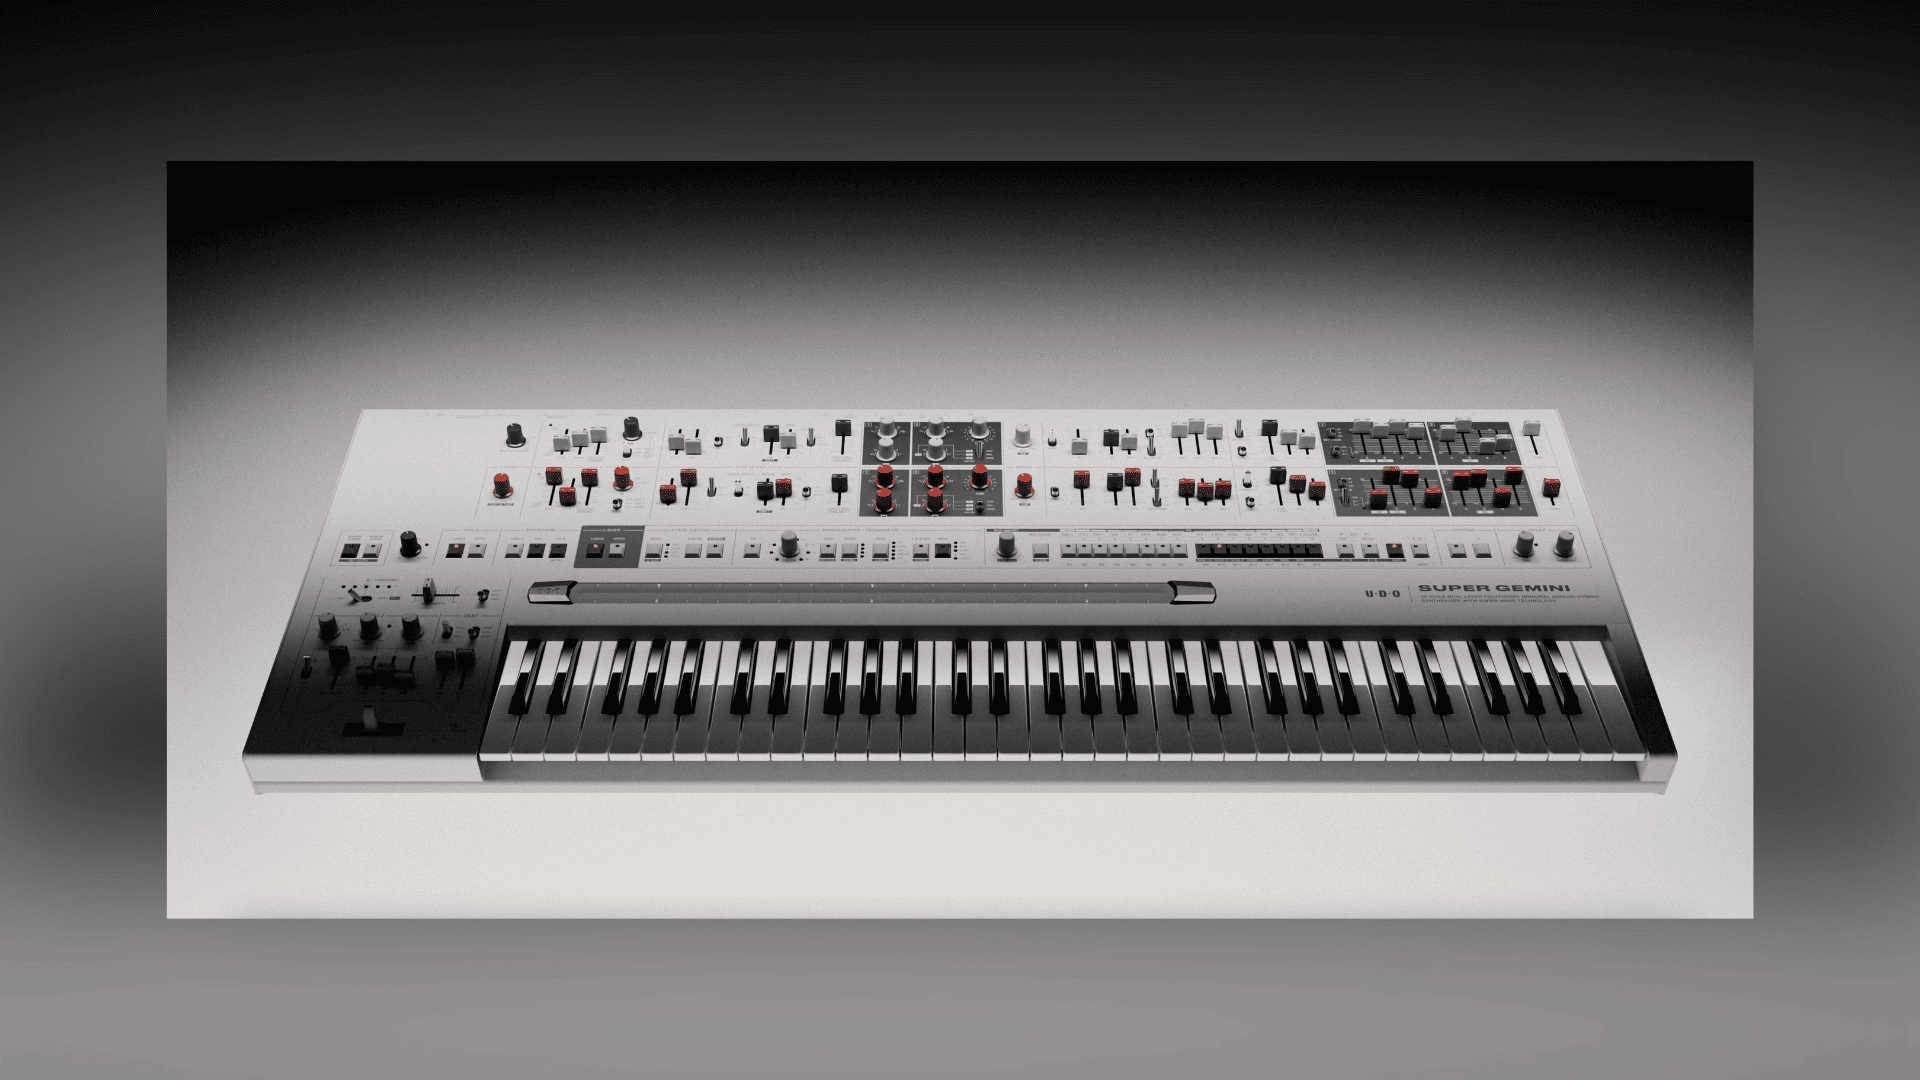 The UNO Super Gemini synthesizer